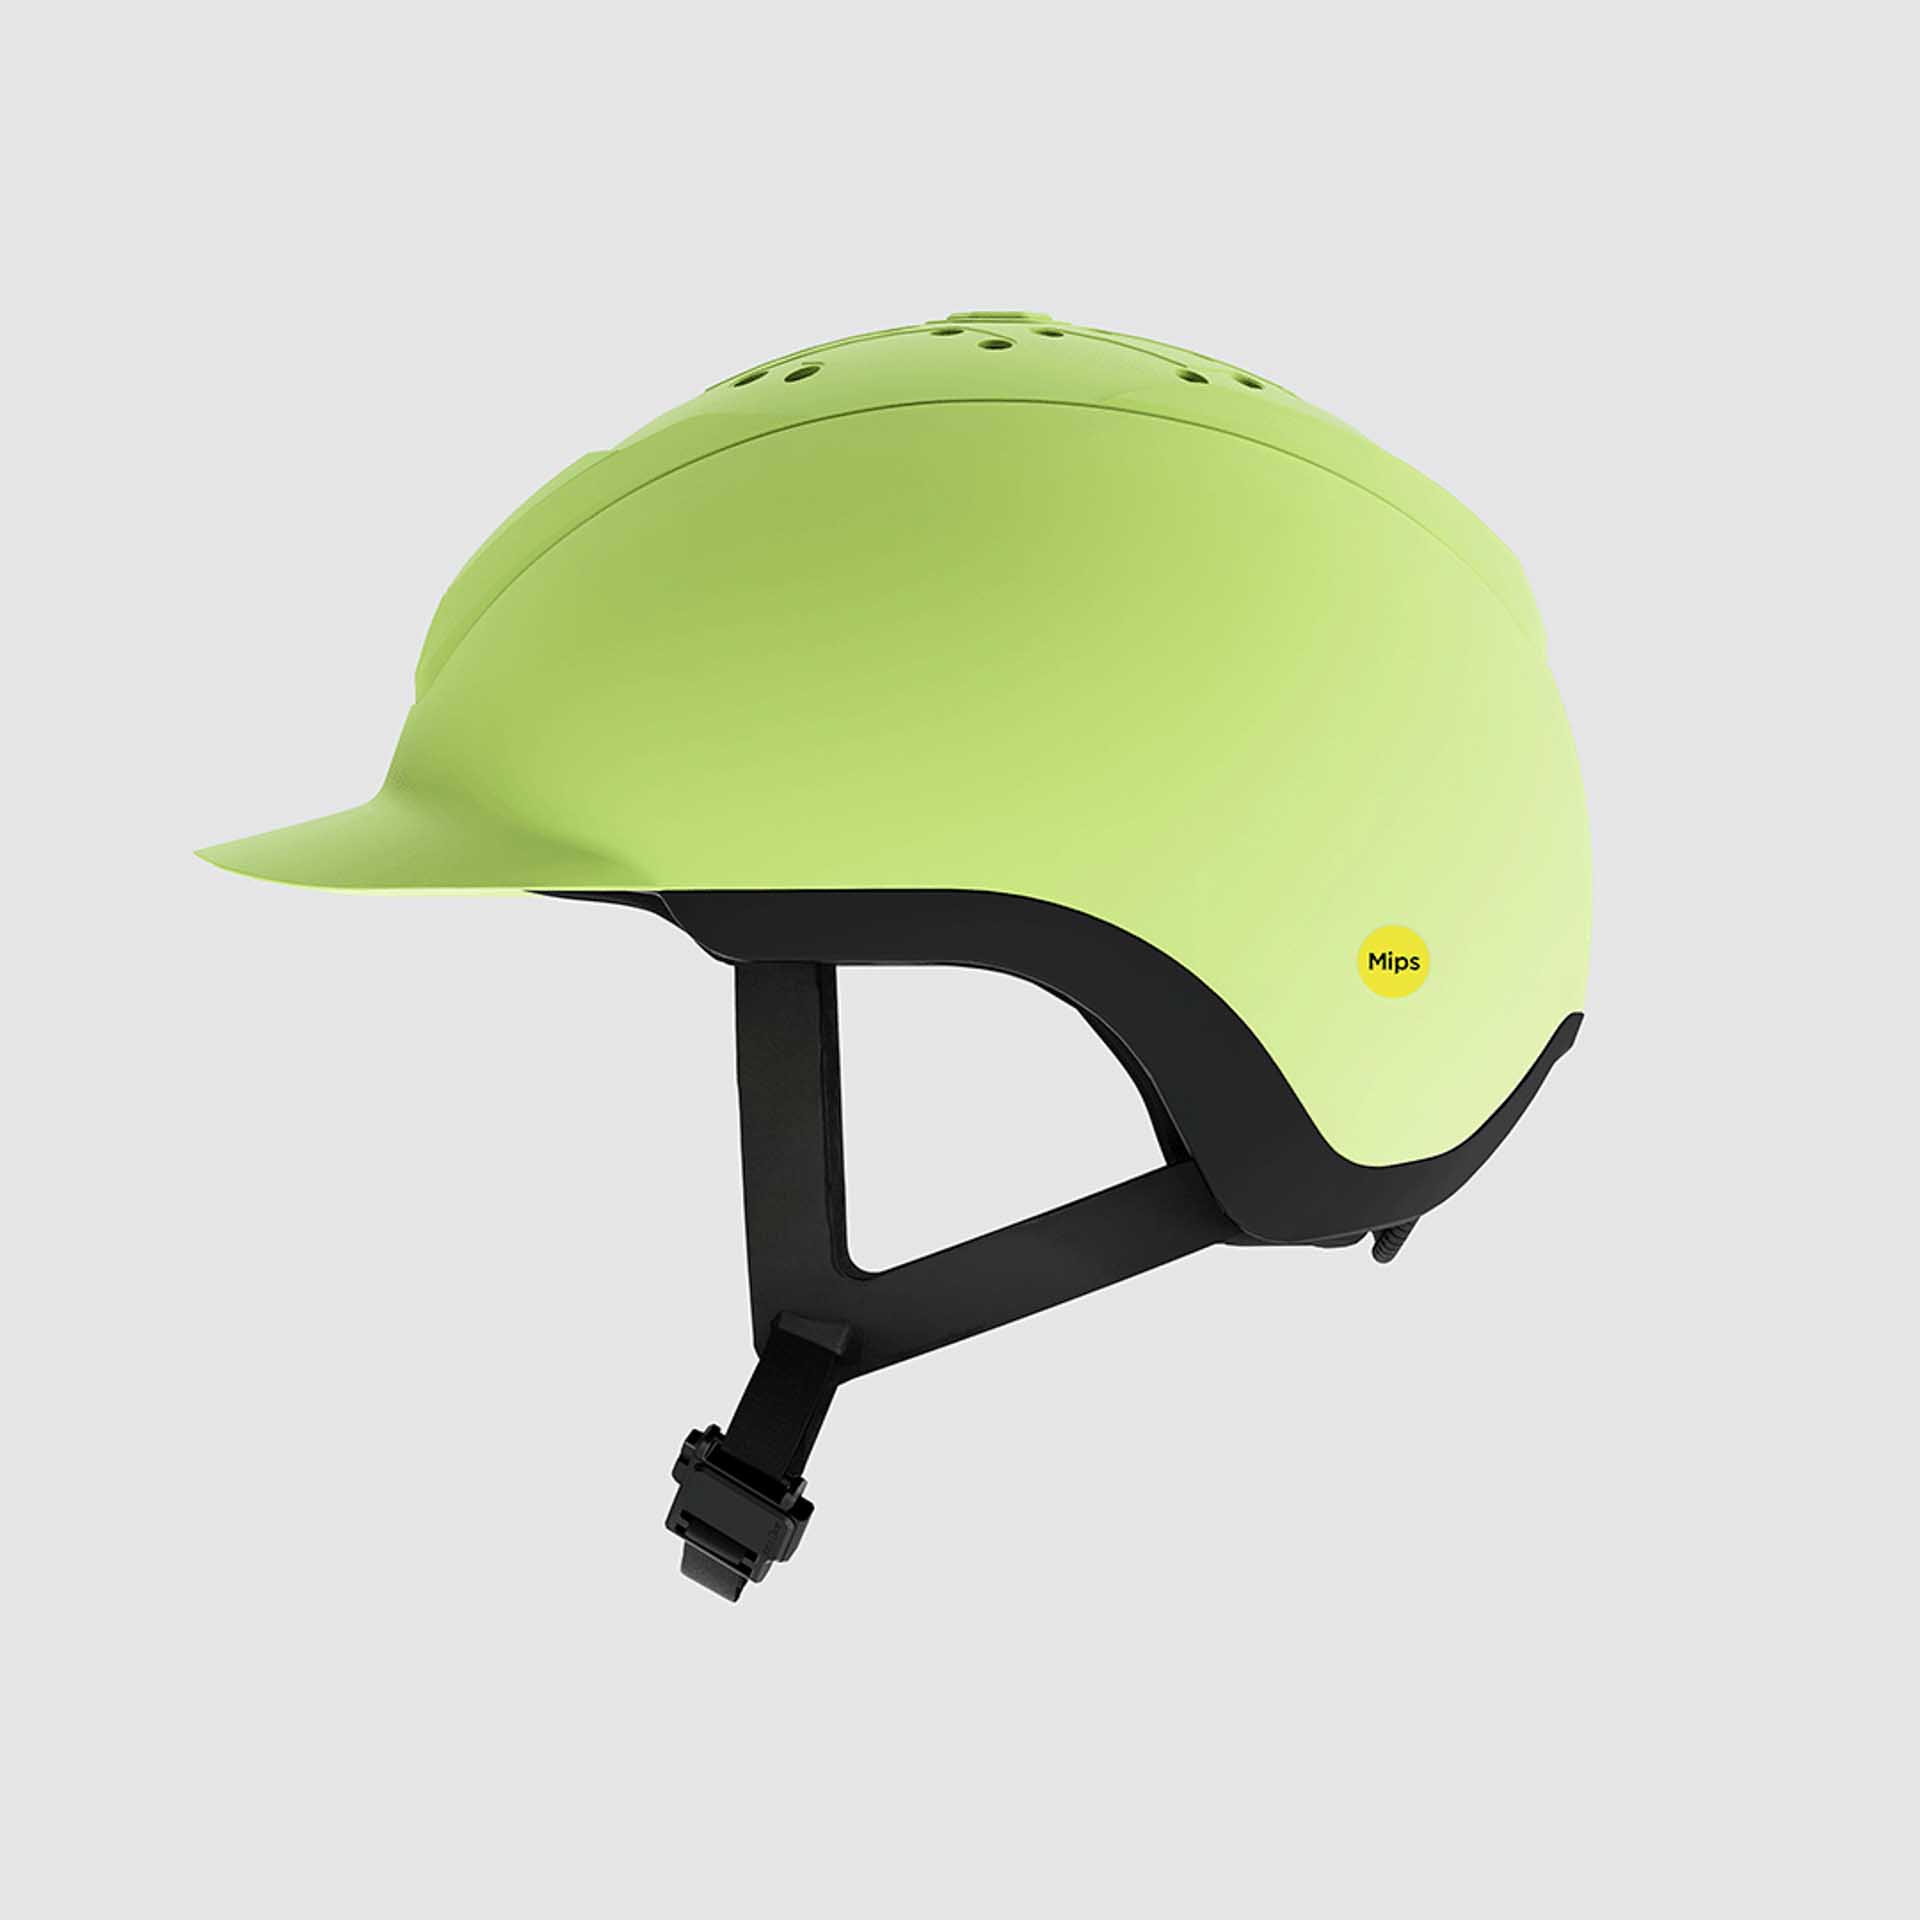 Yelm Reithelm Hybrid Helmet 1.0 Yellow One Size